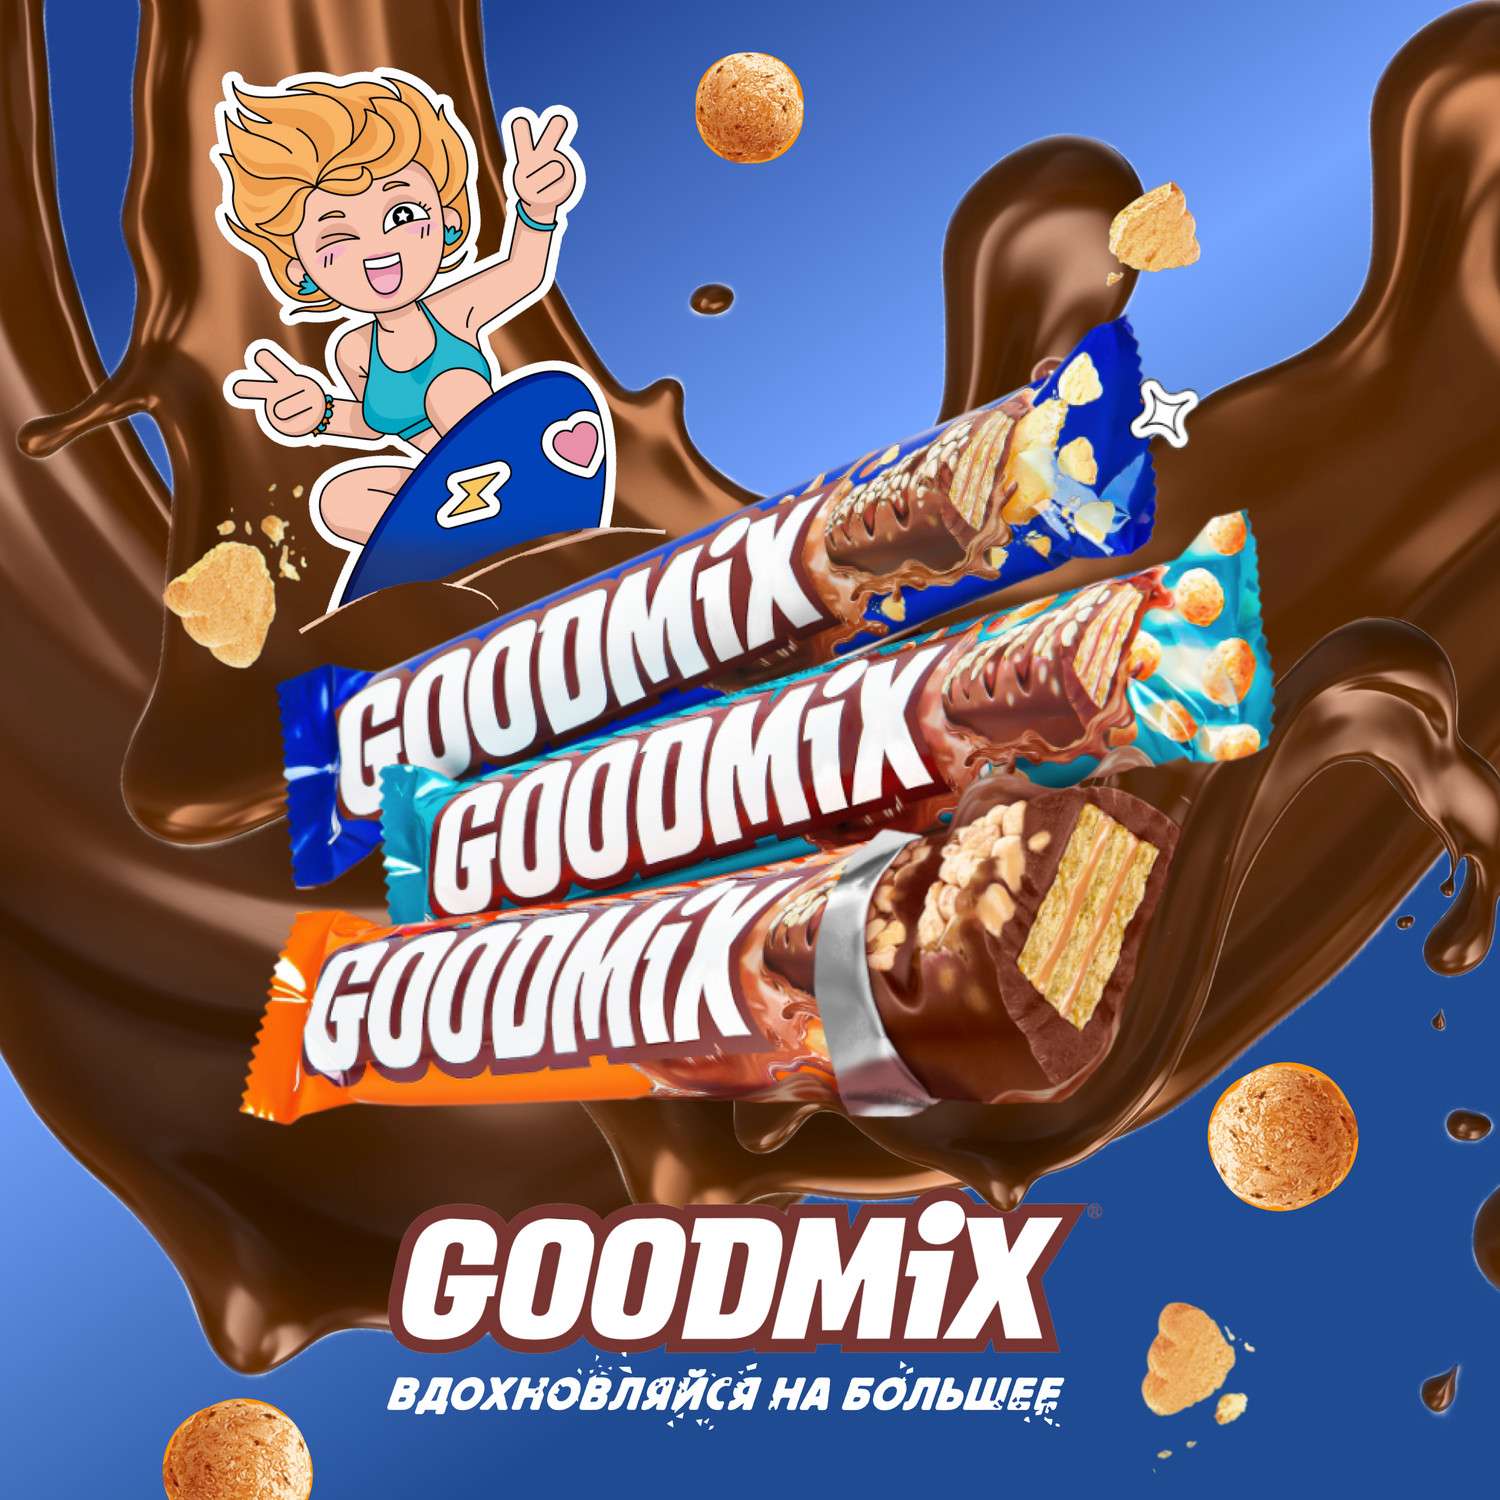 Батончик шоколадный Goodmix Duo печенье 47г - фото 7